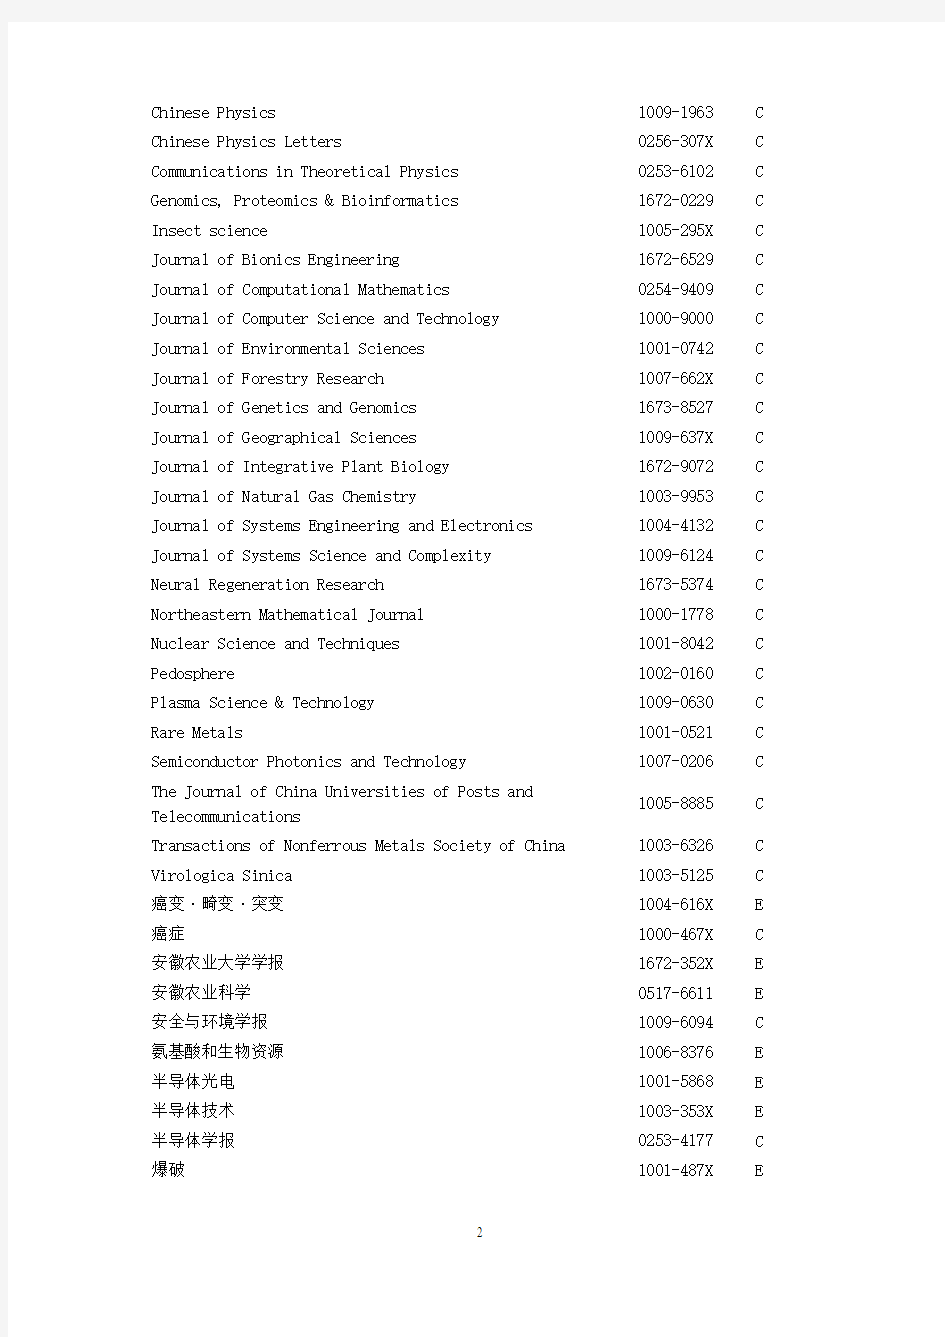 中国科学引文数据库核心库和引文库来源期刊列表